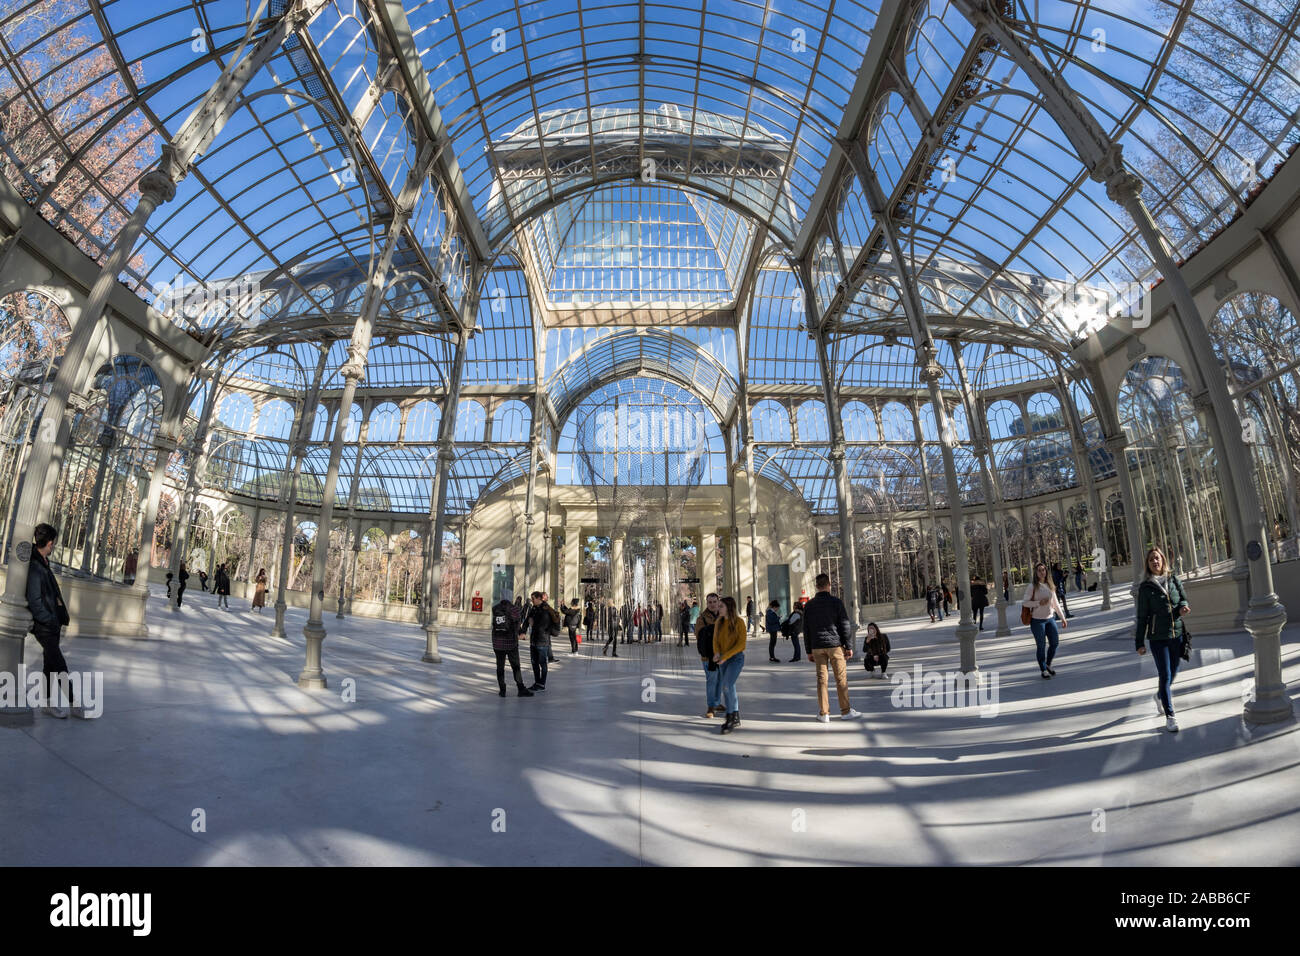 Madrid, Spanien, 14. Dezember 2018: Im Inneren des Crystal Palace in Retiro Park in Madrid. Veranstaltungsort für Kunstausstellungen von Reina Sofia Museum organisiert, Modell Stockfoto